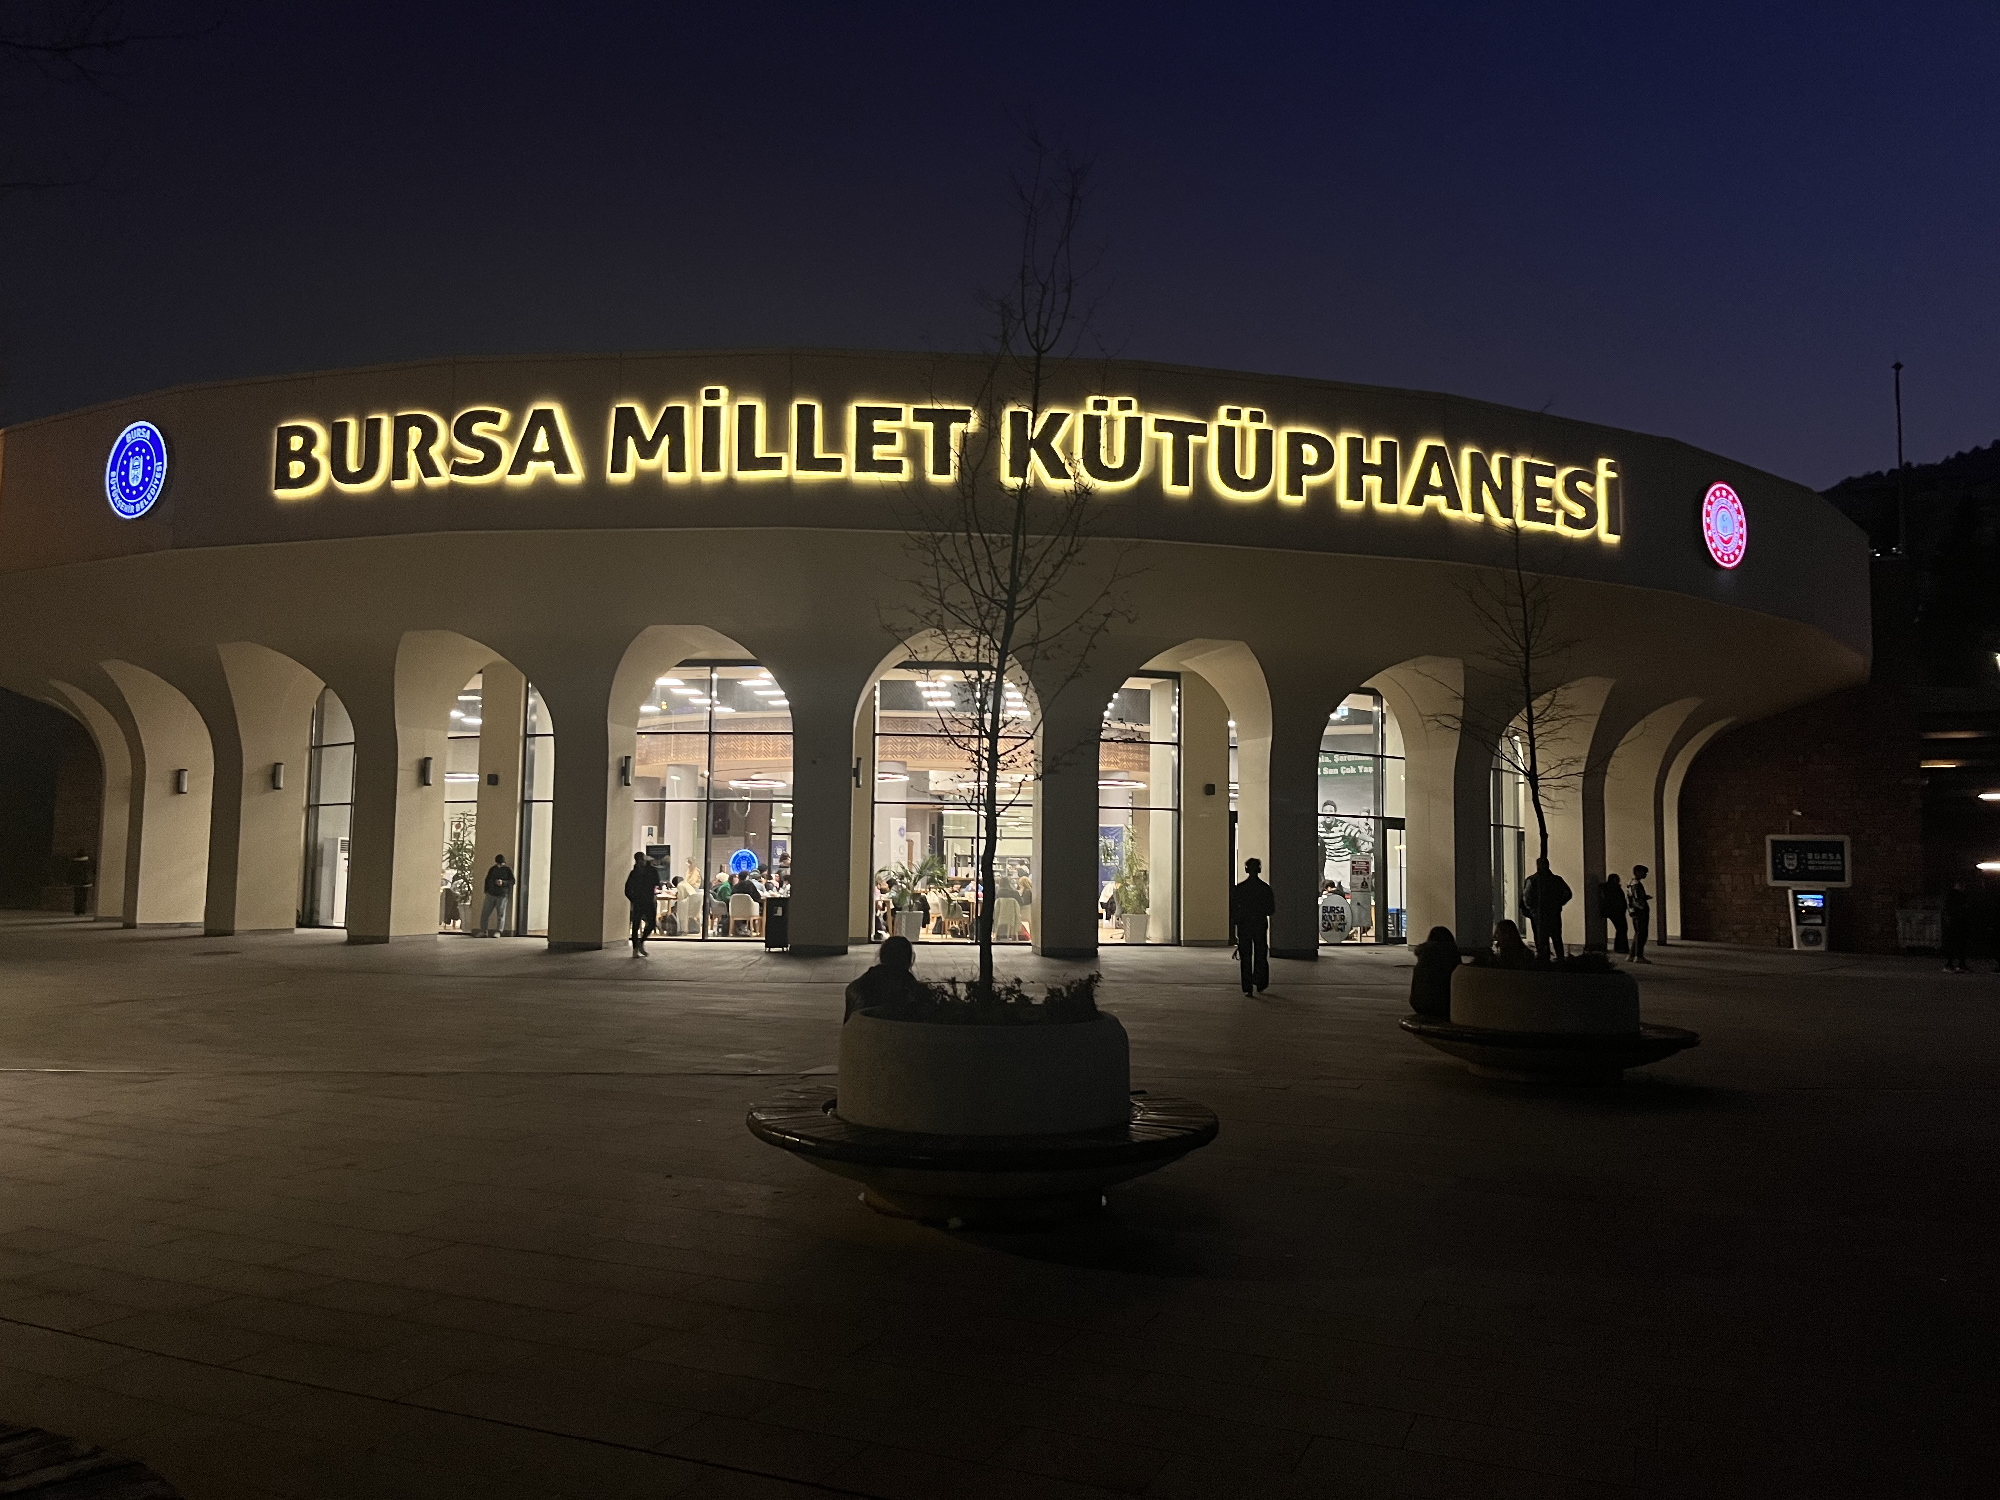 Bursa’daki Millet Kütüphanesi kapılarını 24 saat açık tutuyor